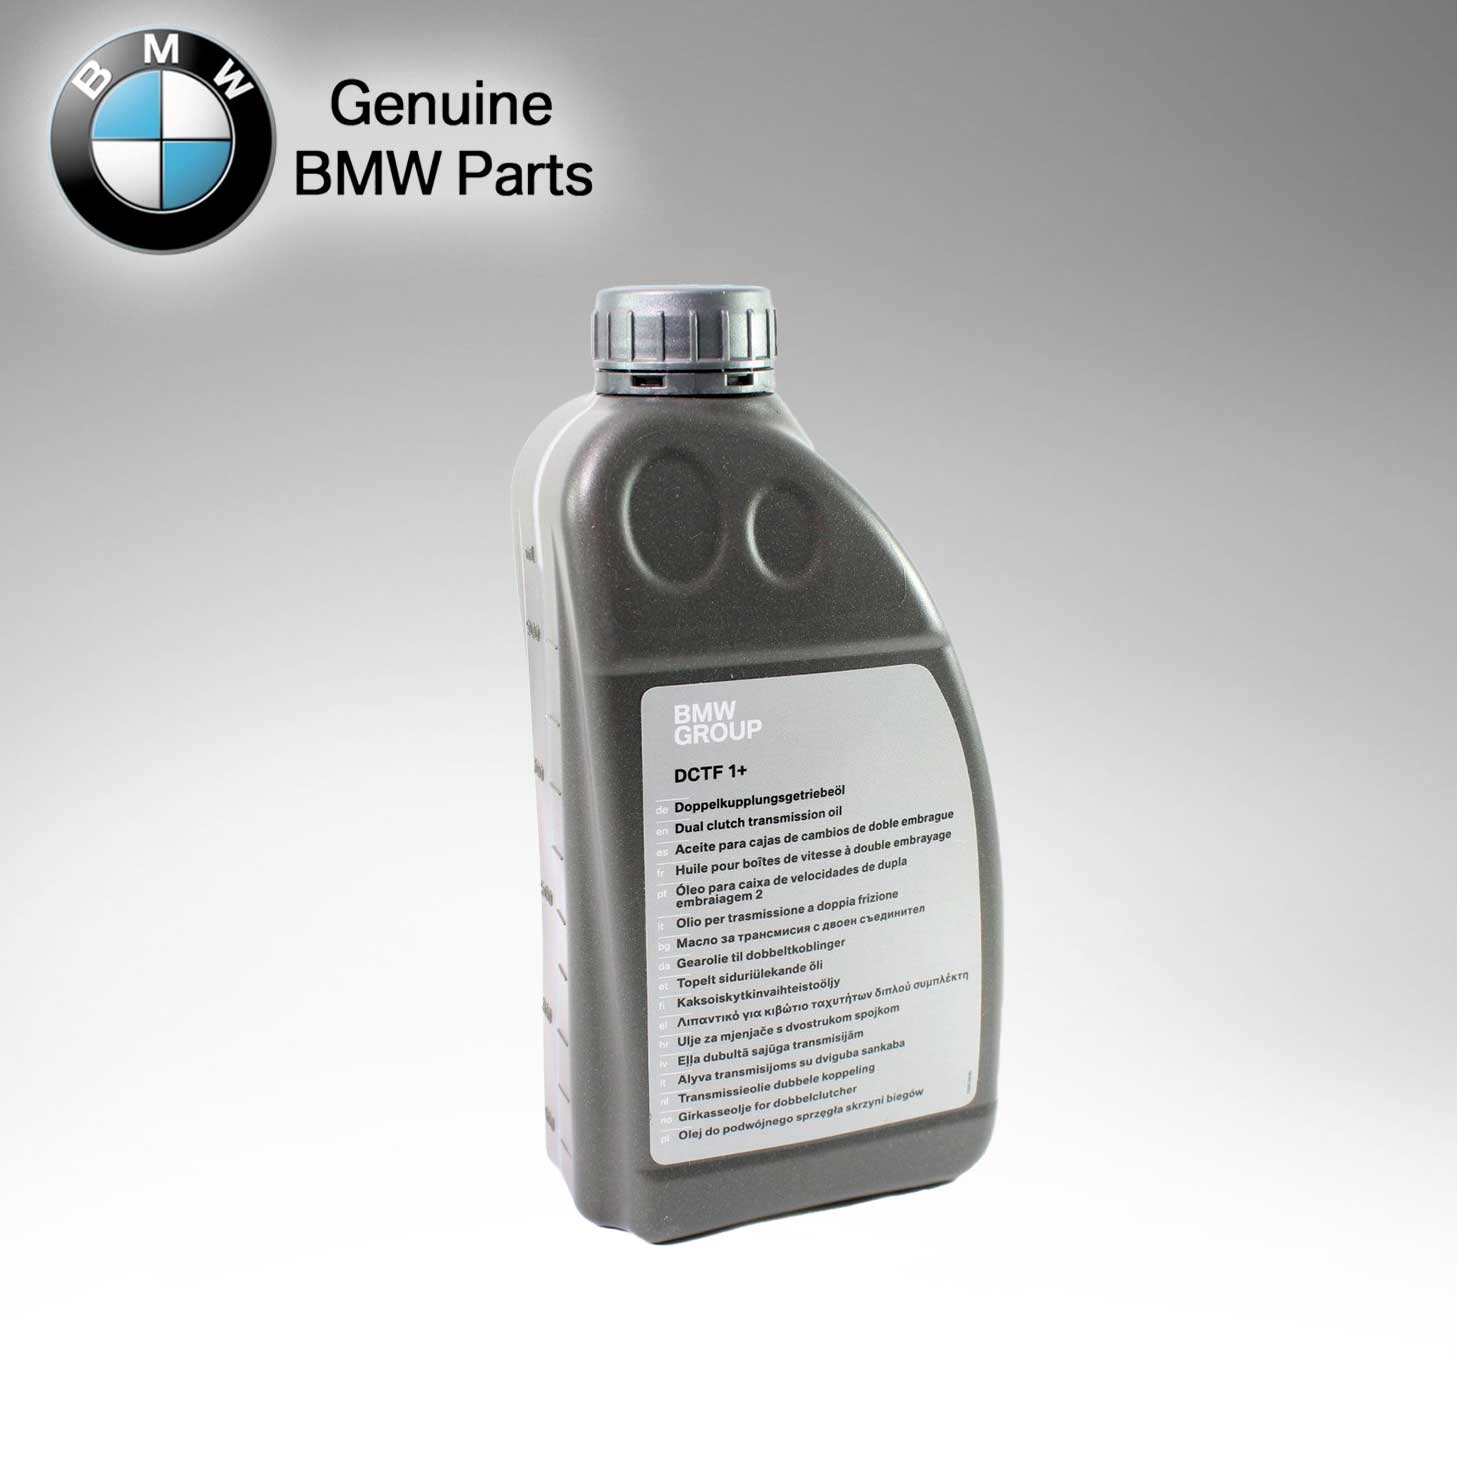 BMW Genuine GEAR OIL DUAL CLUTCH DCTF 1+ SAE 75W 83222446673